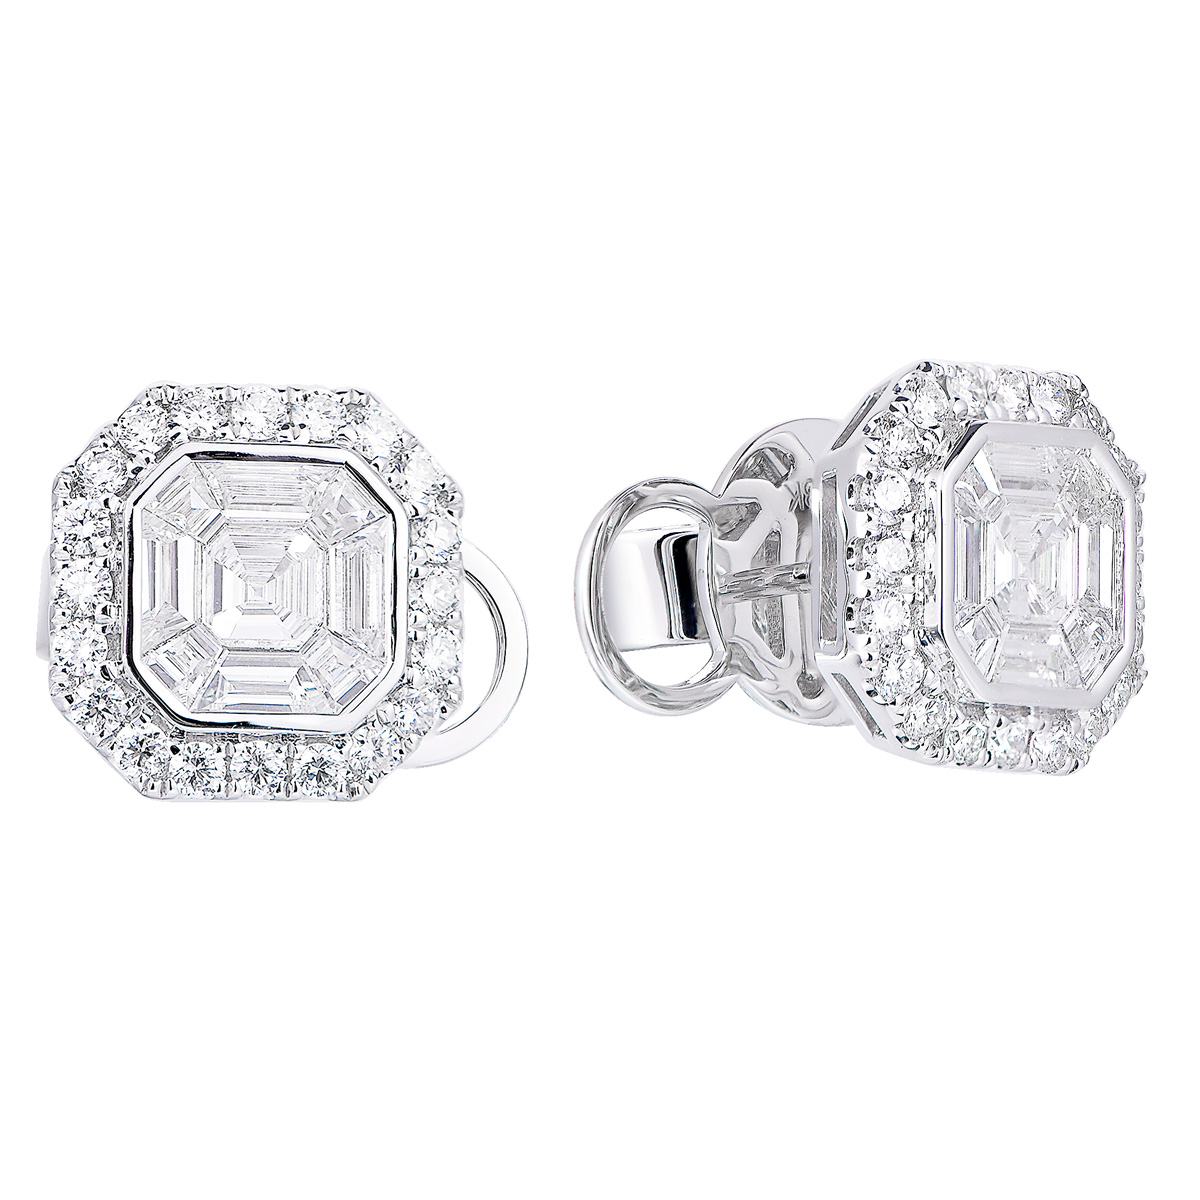 AM25860W 18K white gold Asscher cut diamond earrings